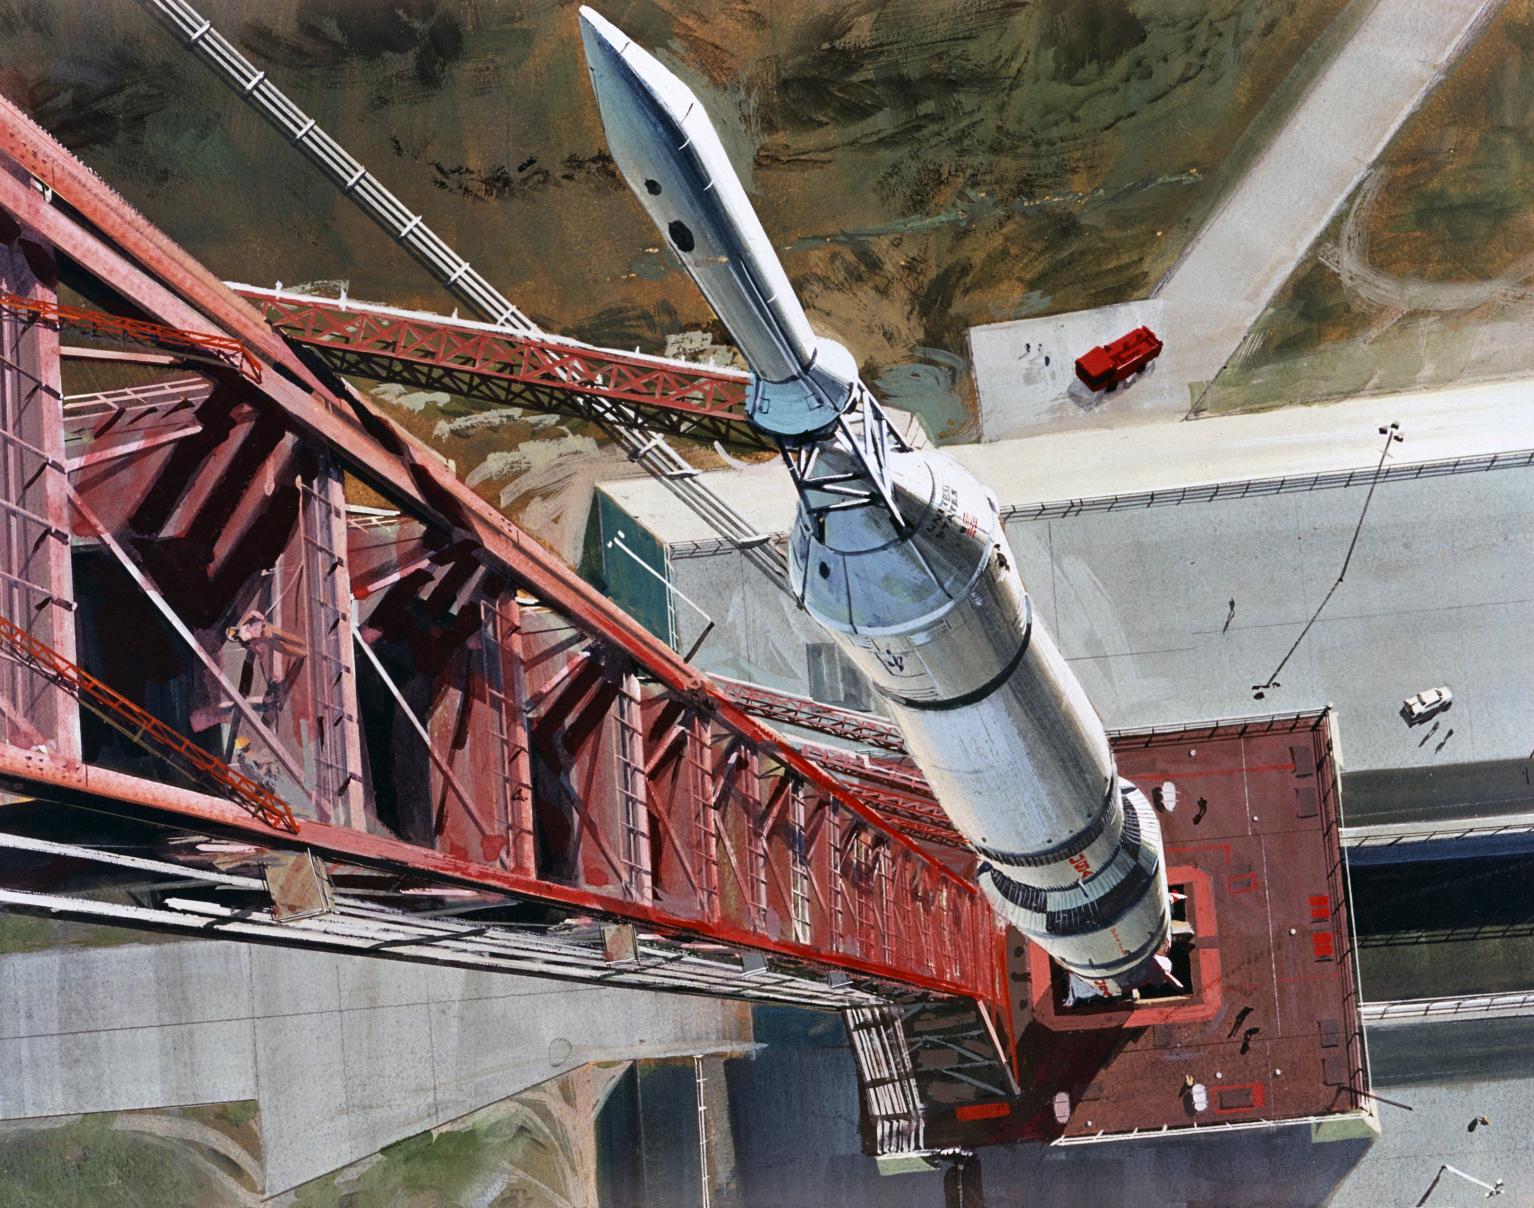 Apollo Spacecraft and Saturn V Rocket